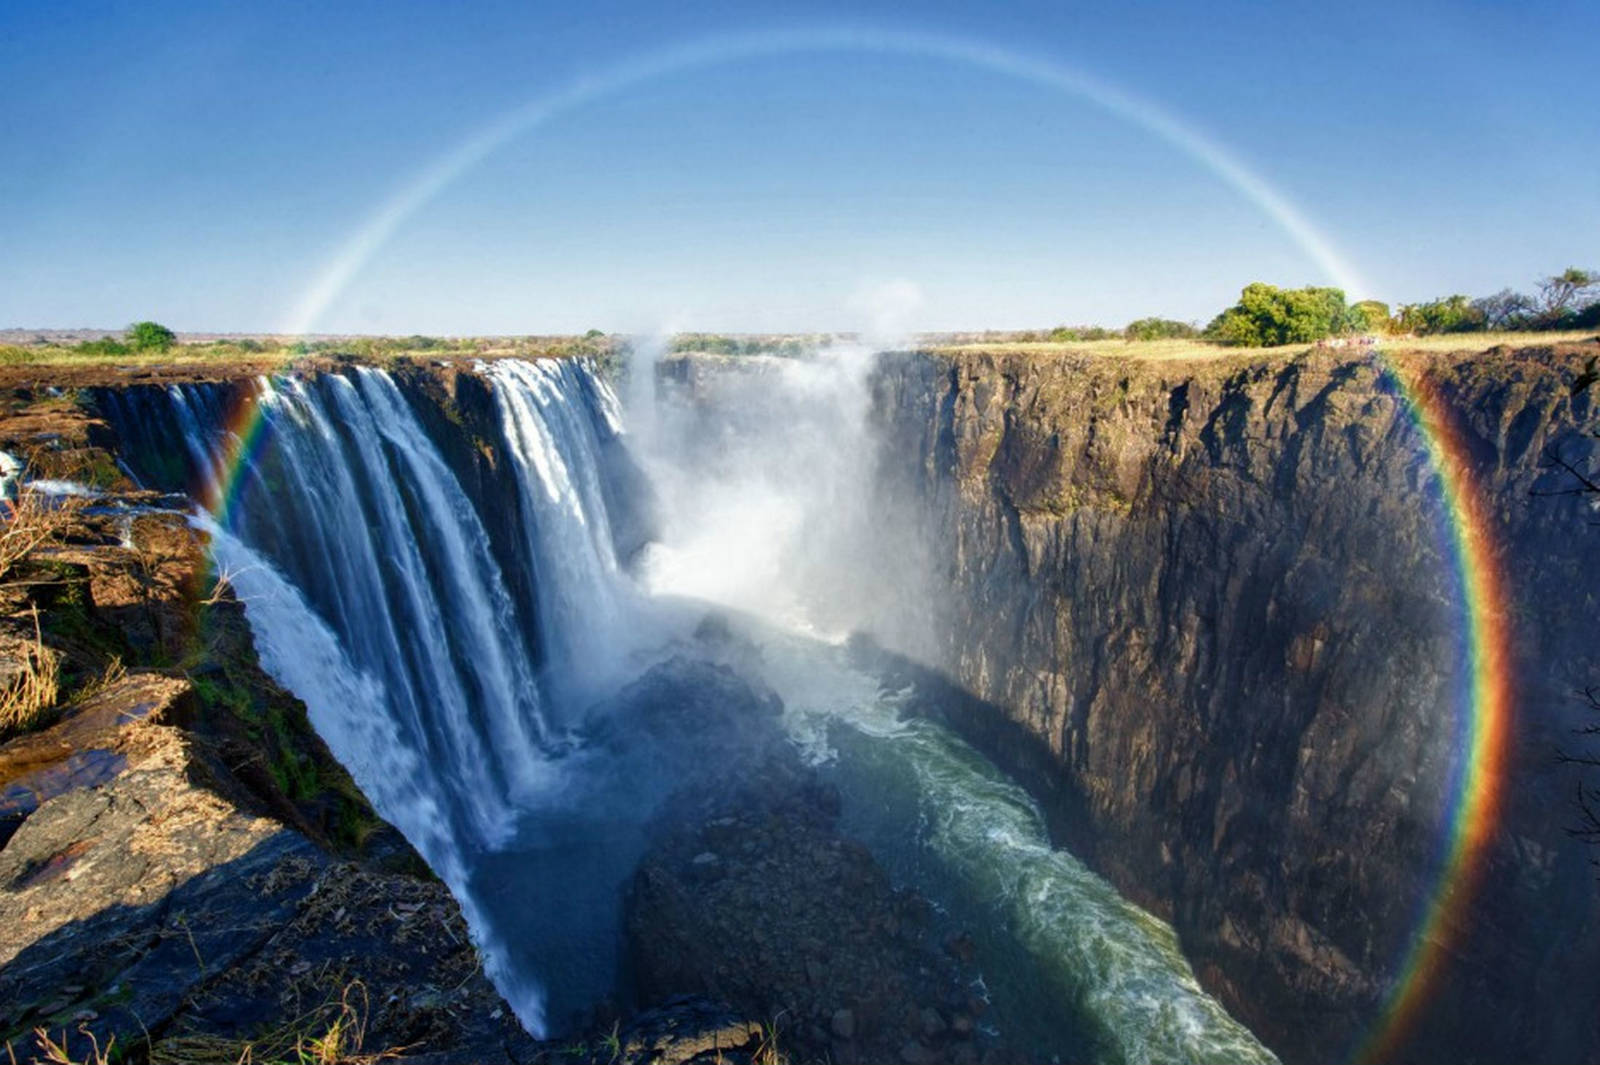 Victoria Falls tourist arrivals up 22%